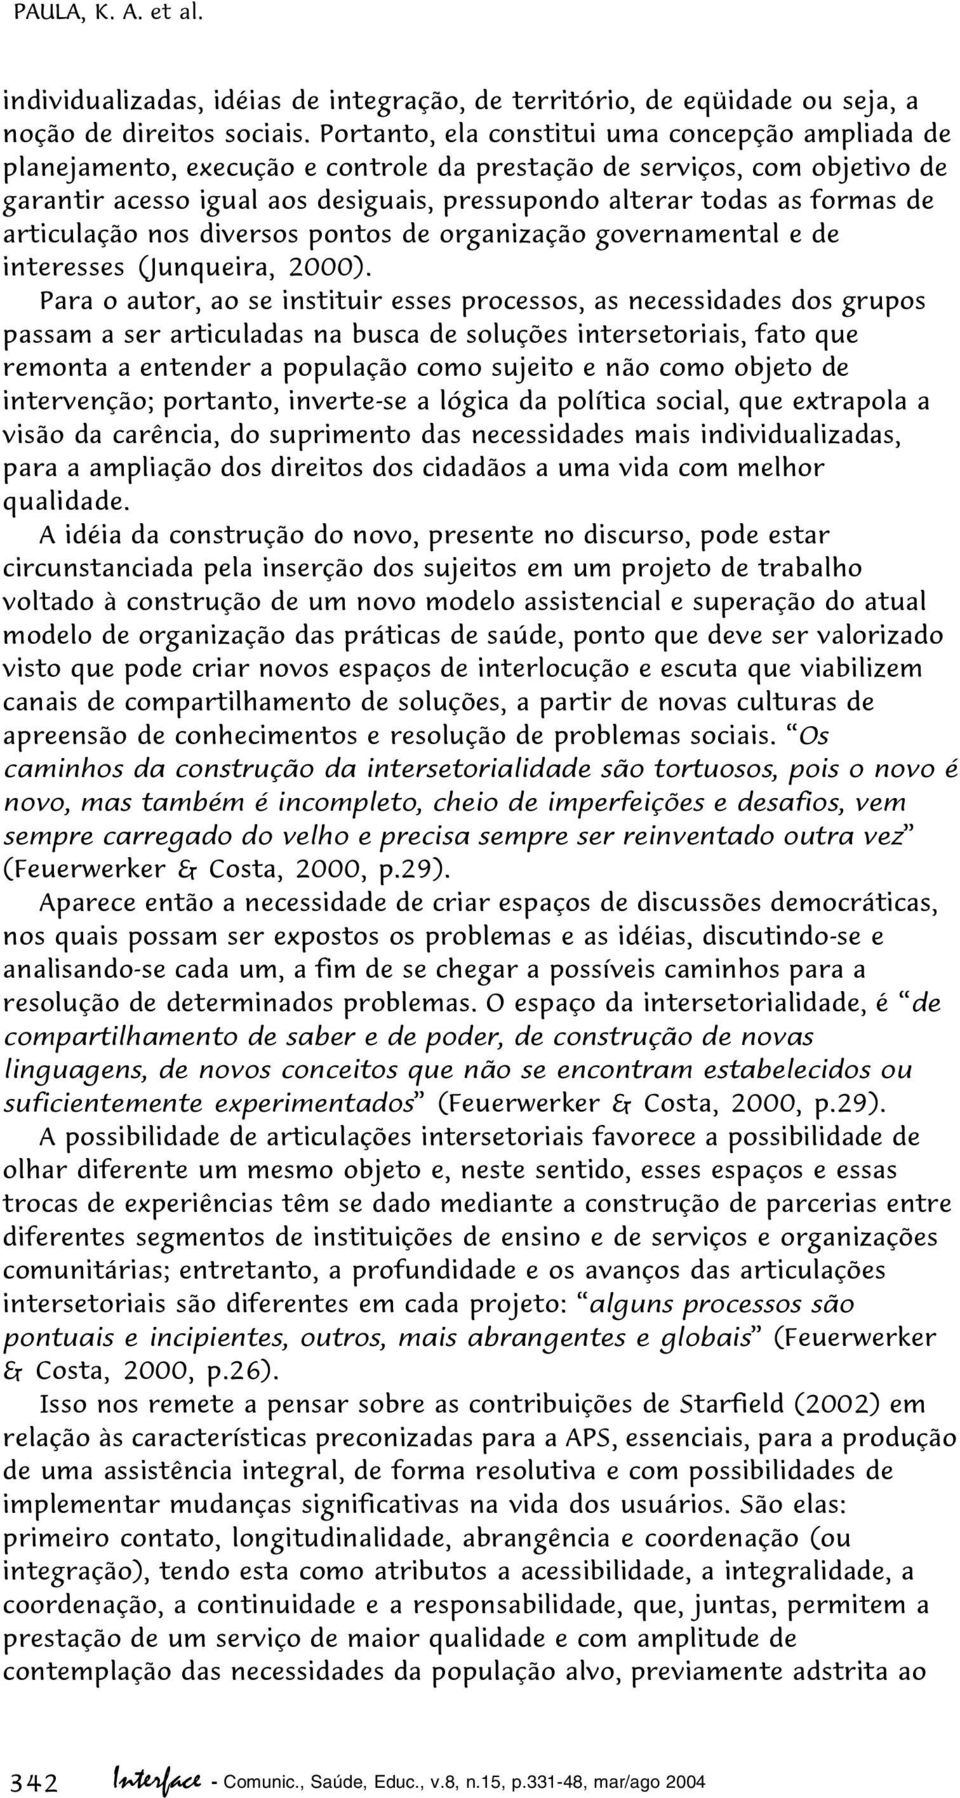 de articulação nos diversos pontos de organização governamental e de interesses (Junqueira, 2000).